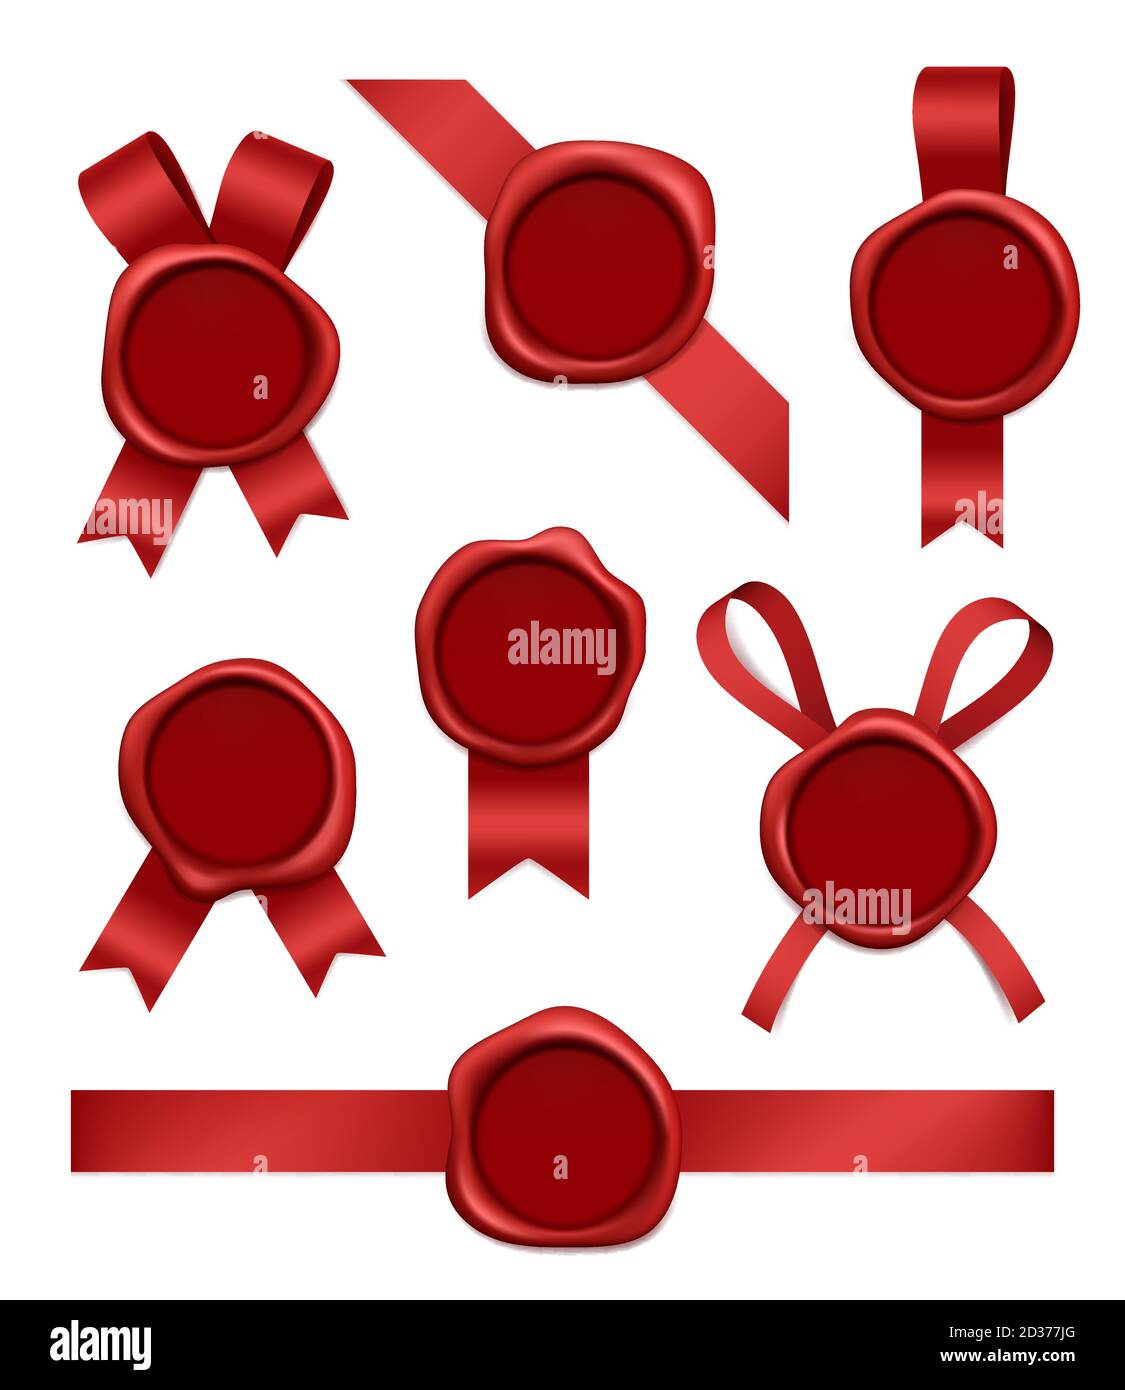 Wachsstempel und Bänder. Versiegelte rote Gummi-Briefmarken mit Bändern Vektor realistische 3d-Bilder Stock Vektor